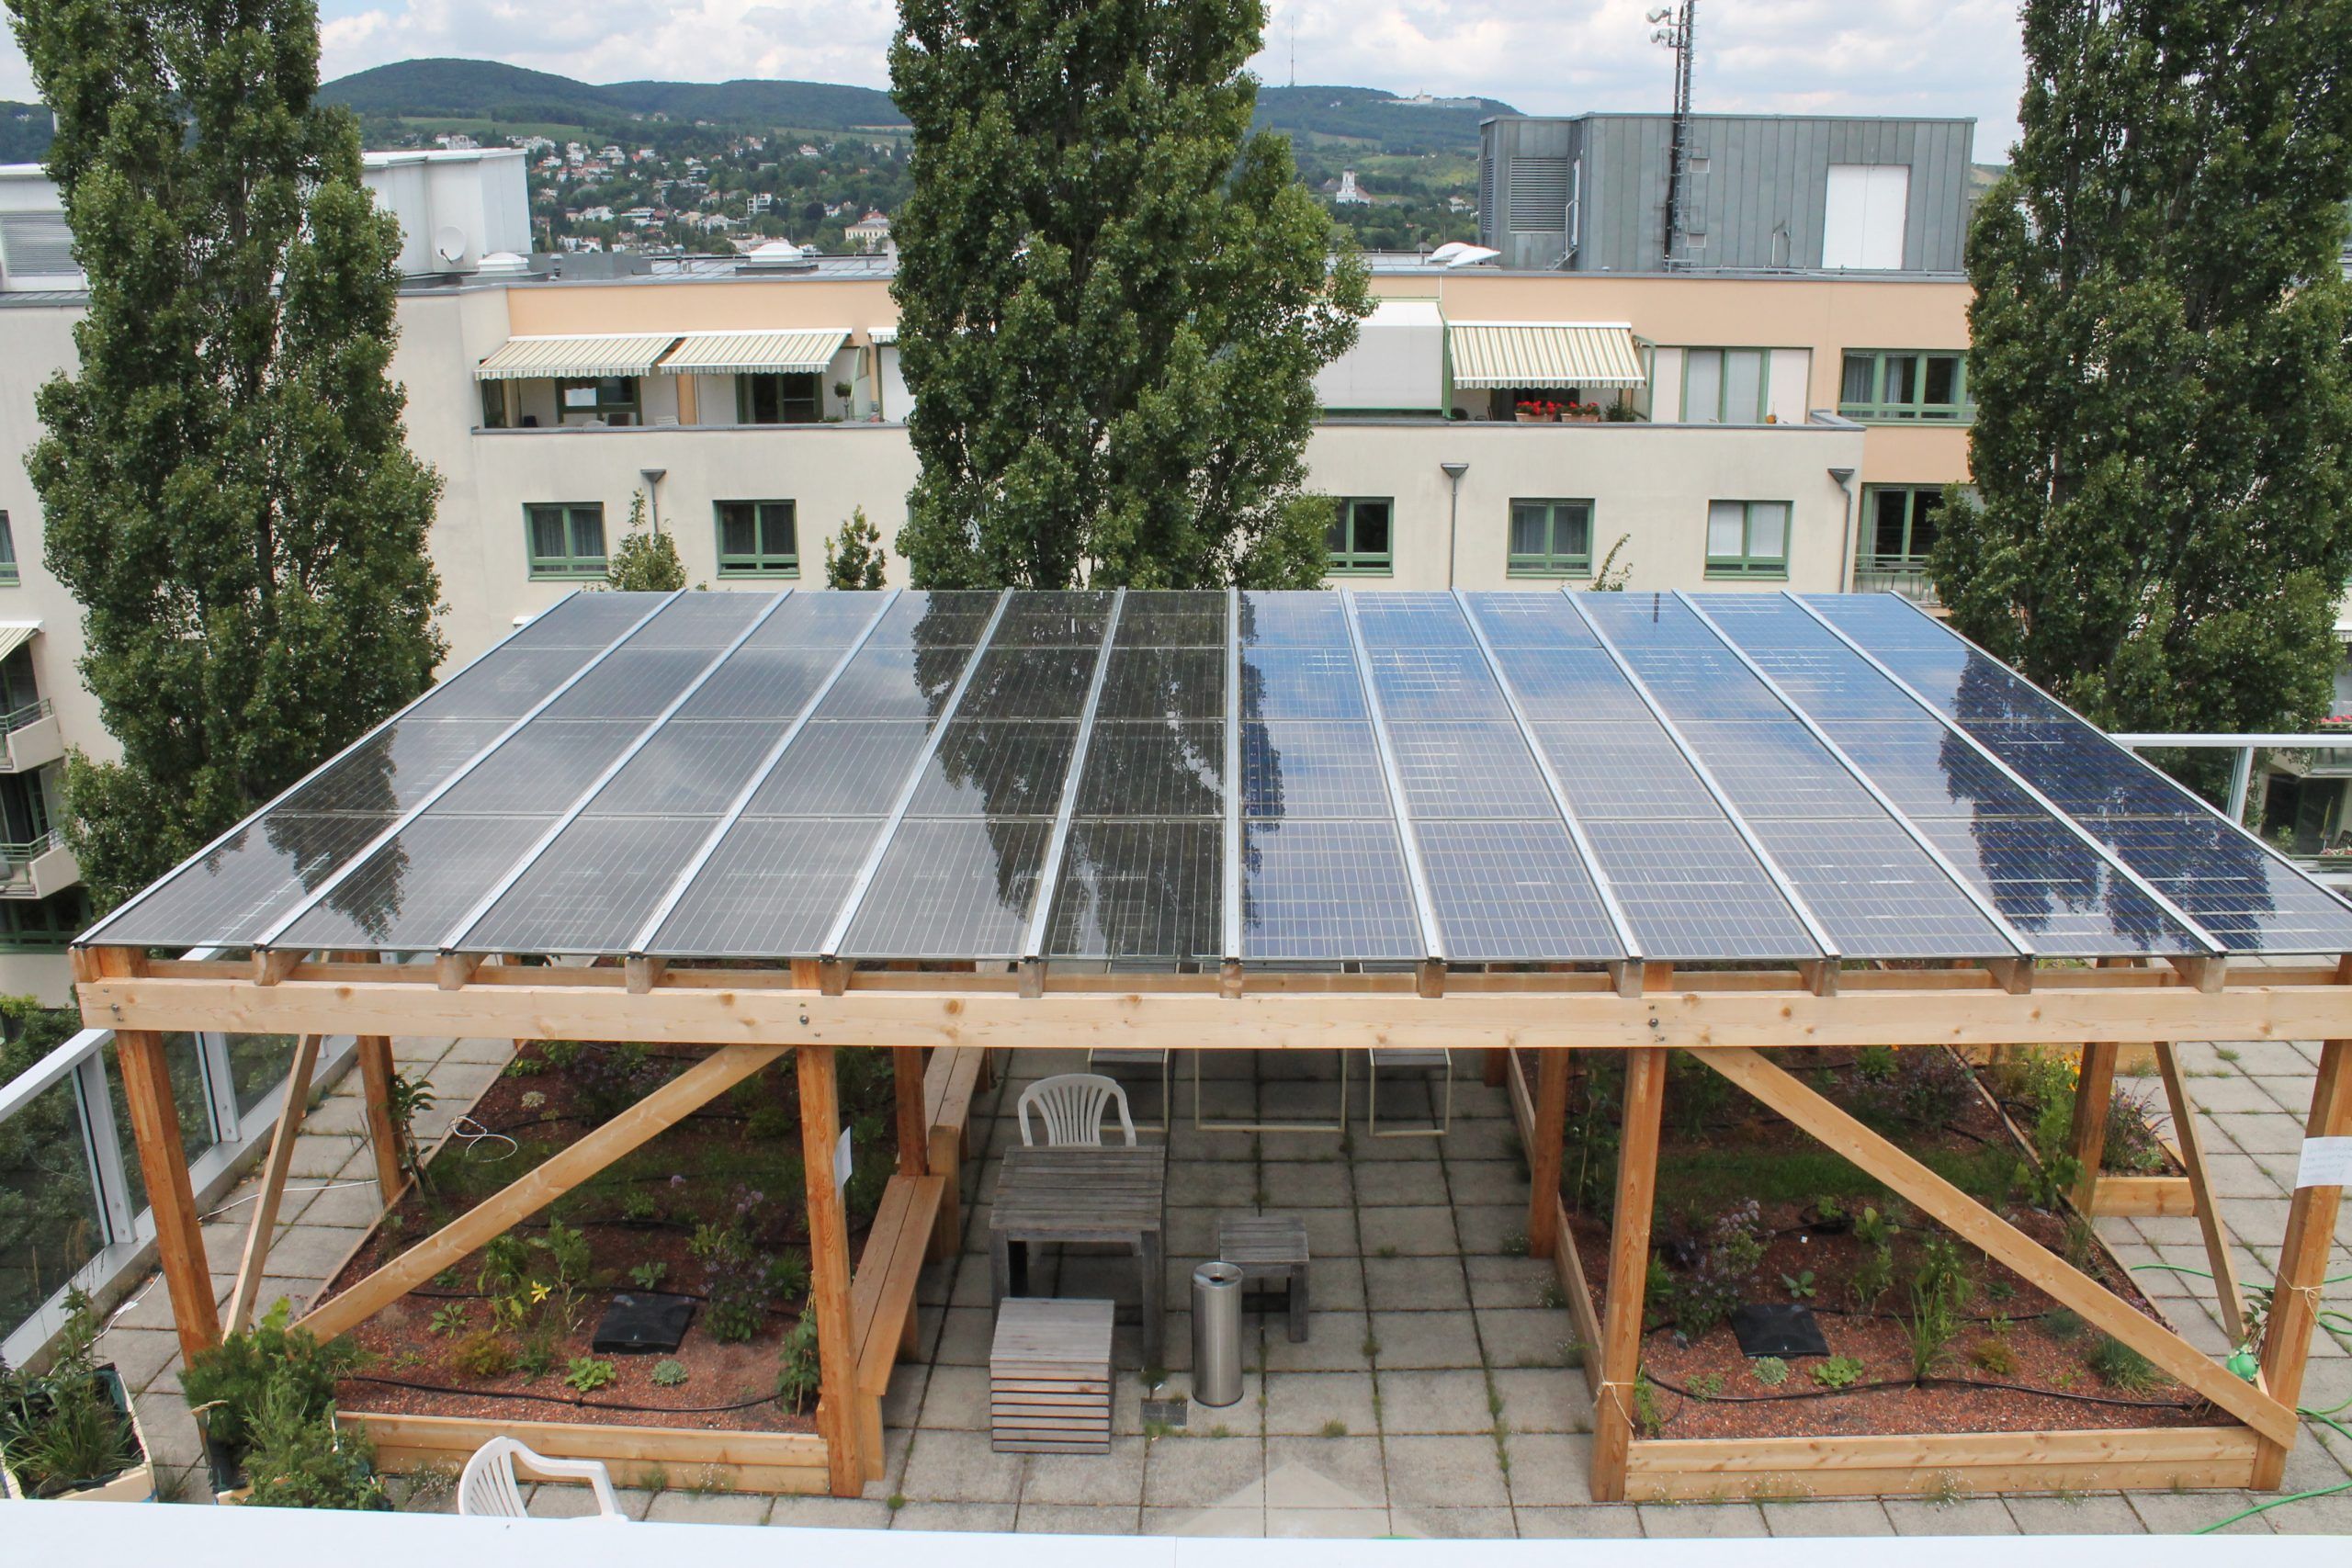 Das Foto zeigt die aufgeständerten Photovoltaikmodule und deren Konstruktion auf einem Hausdach.